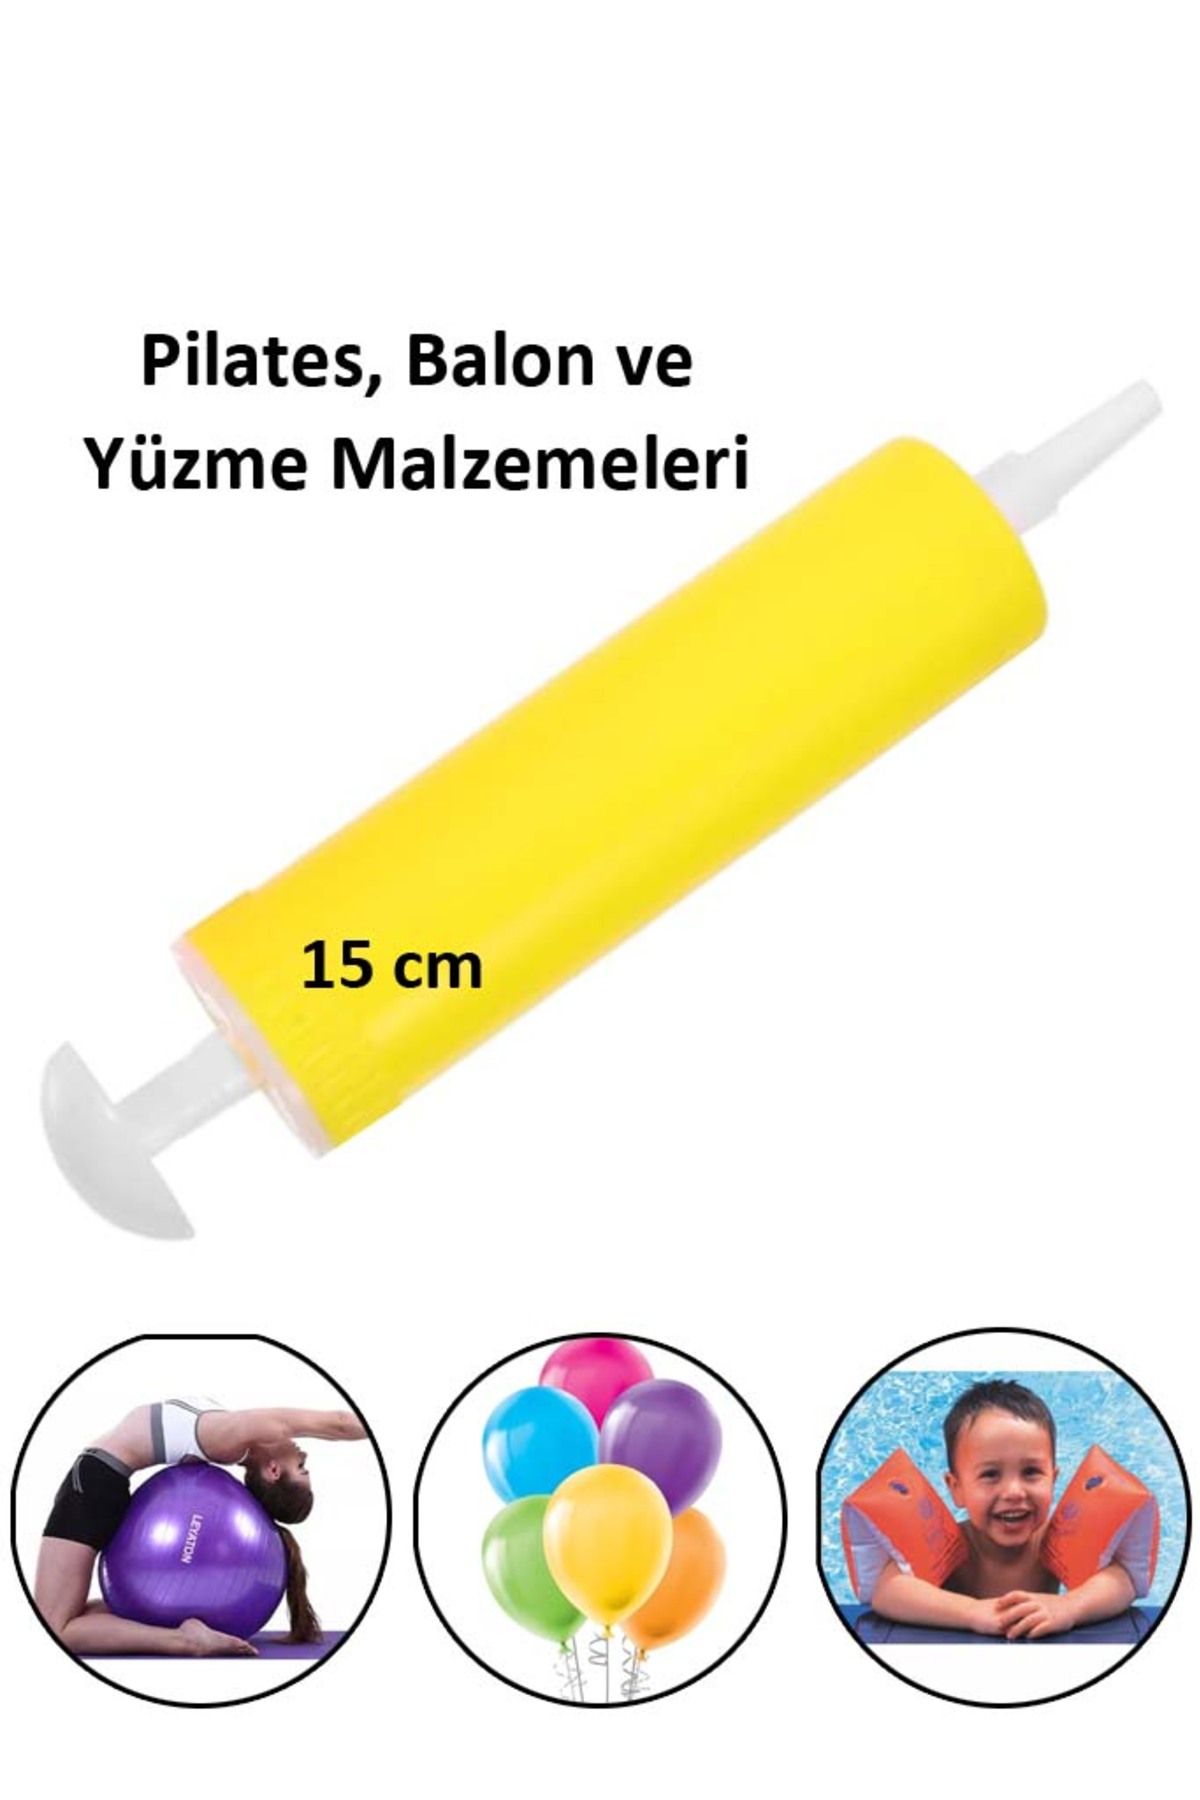 Liggo Pilates Topu Şişirme Pompası Balon Pompası Yüzme Malzemeleri Şişirme Pompası